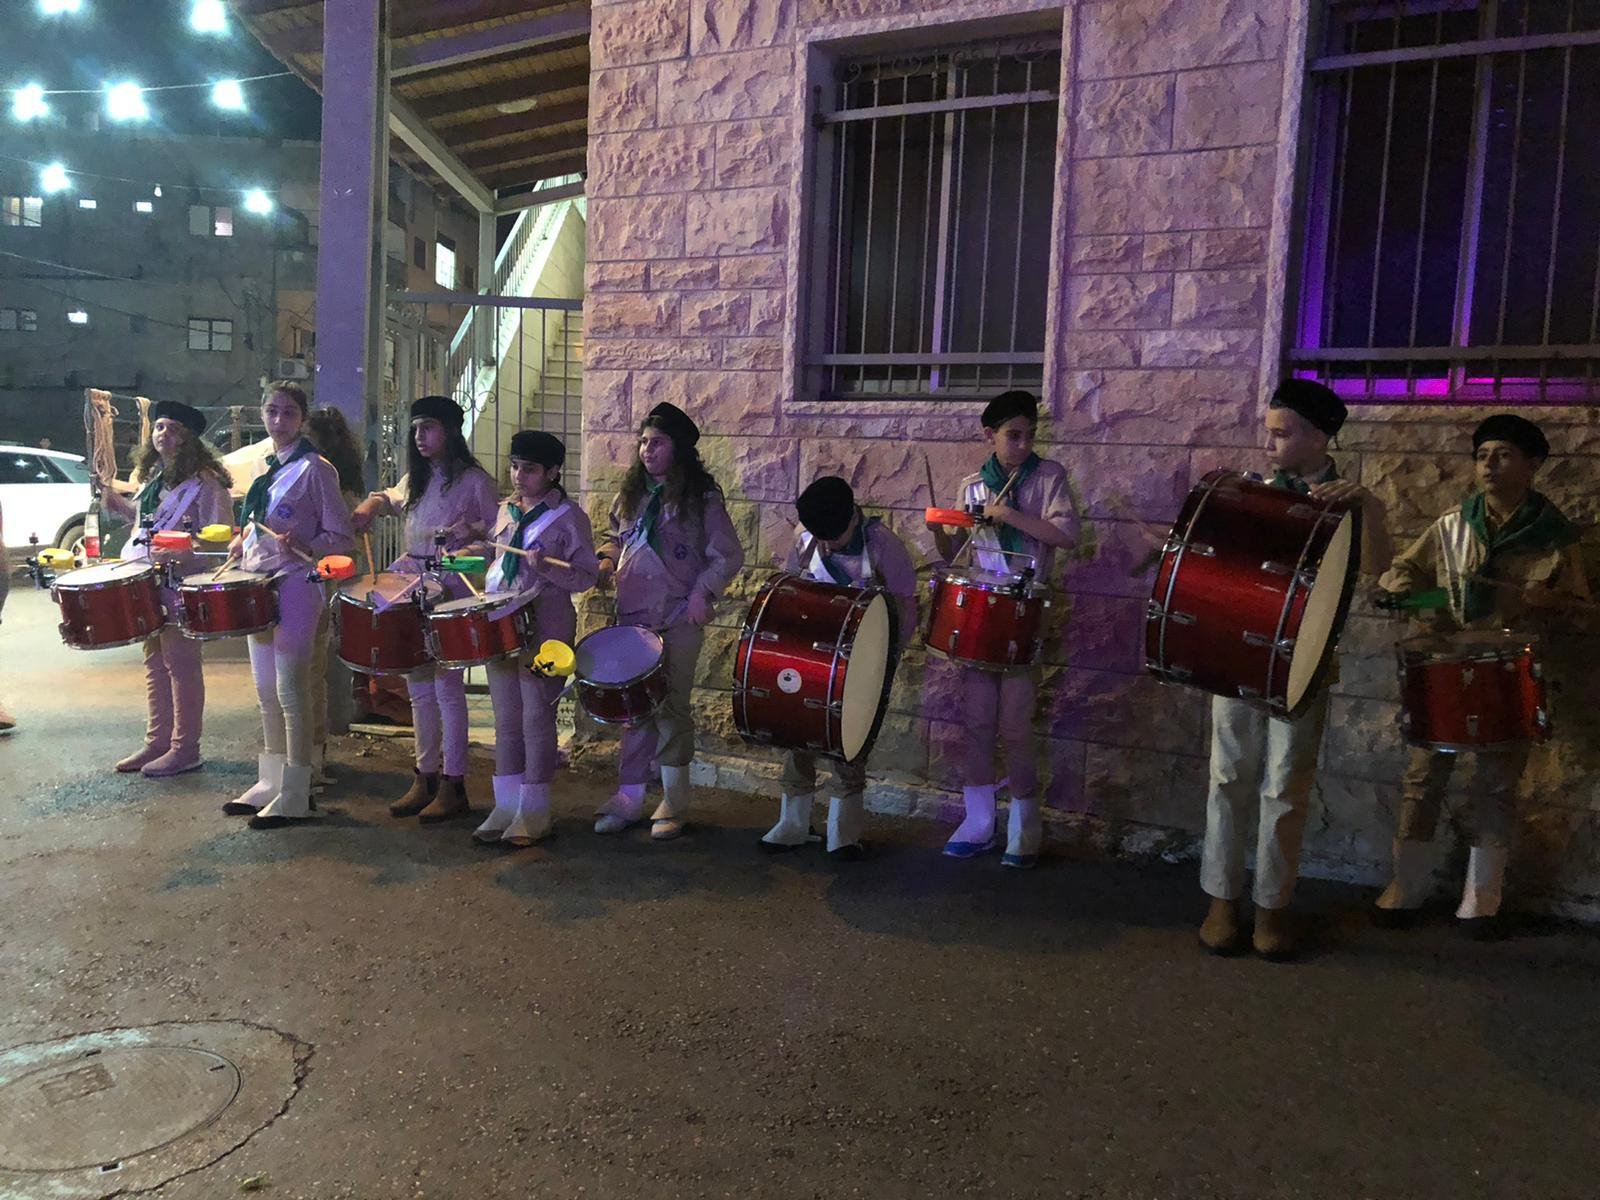 المدرسة الجماهيريّة بير الأمير -الناصرة تستقبلُ عيد الفطر السعيد بفرحٍ وسرورٍ، وتحتفلُ بحلول العيد بأجواءٍ رمضانية بهيجة.-4